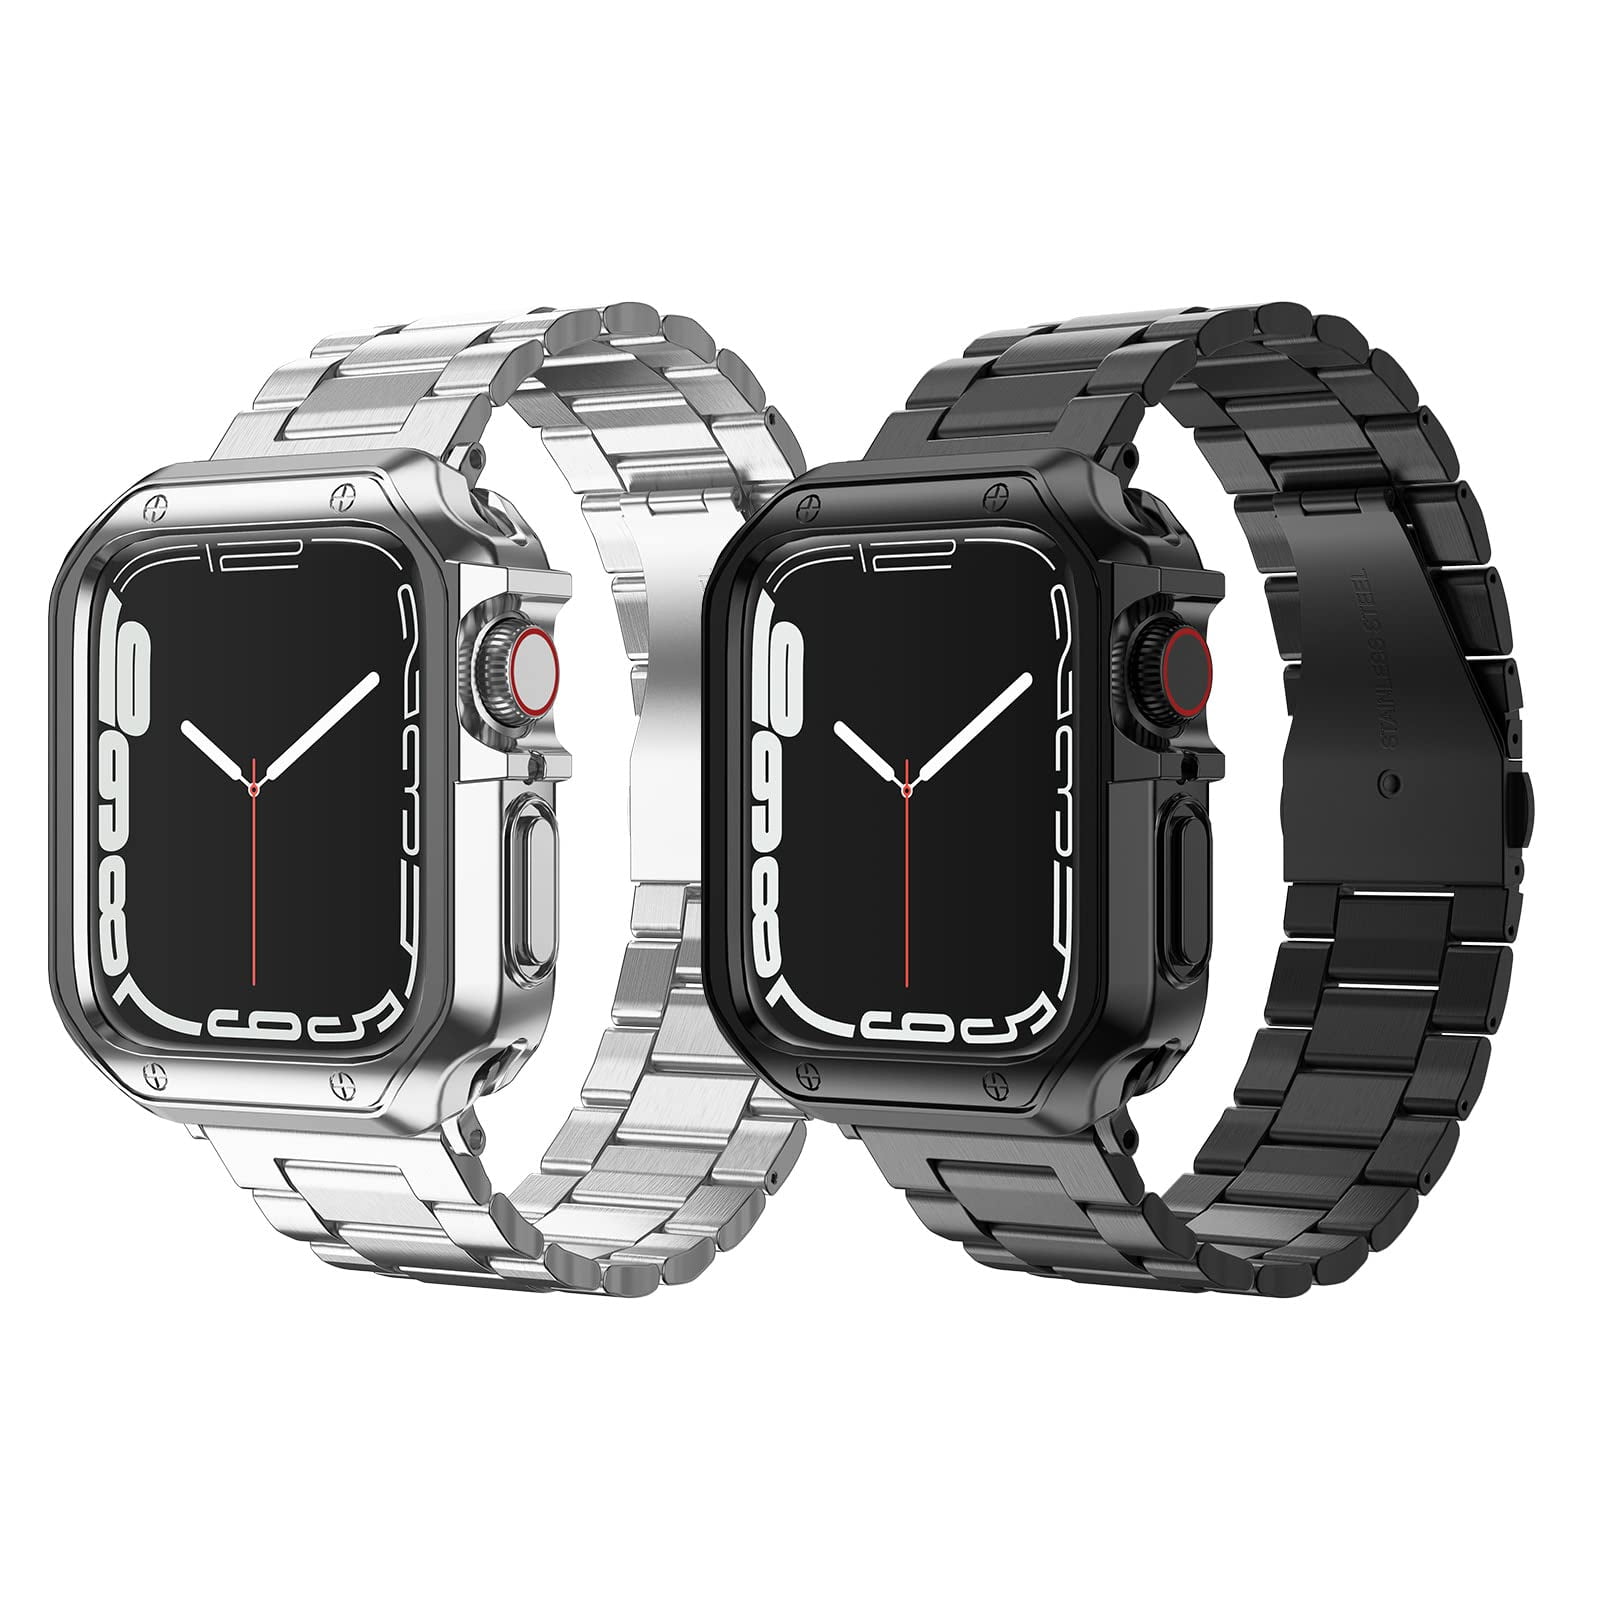 Waterdrop Style Metal Bracelet For Apple Watch - Cxsbands